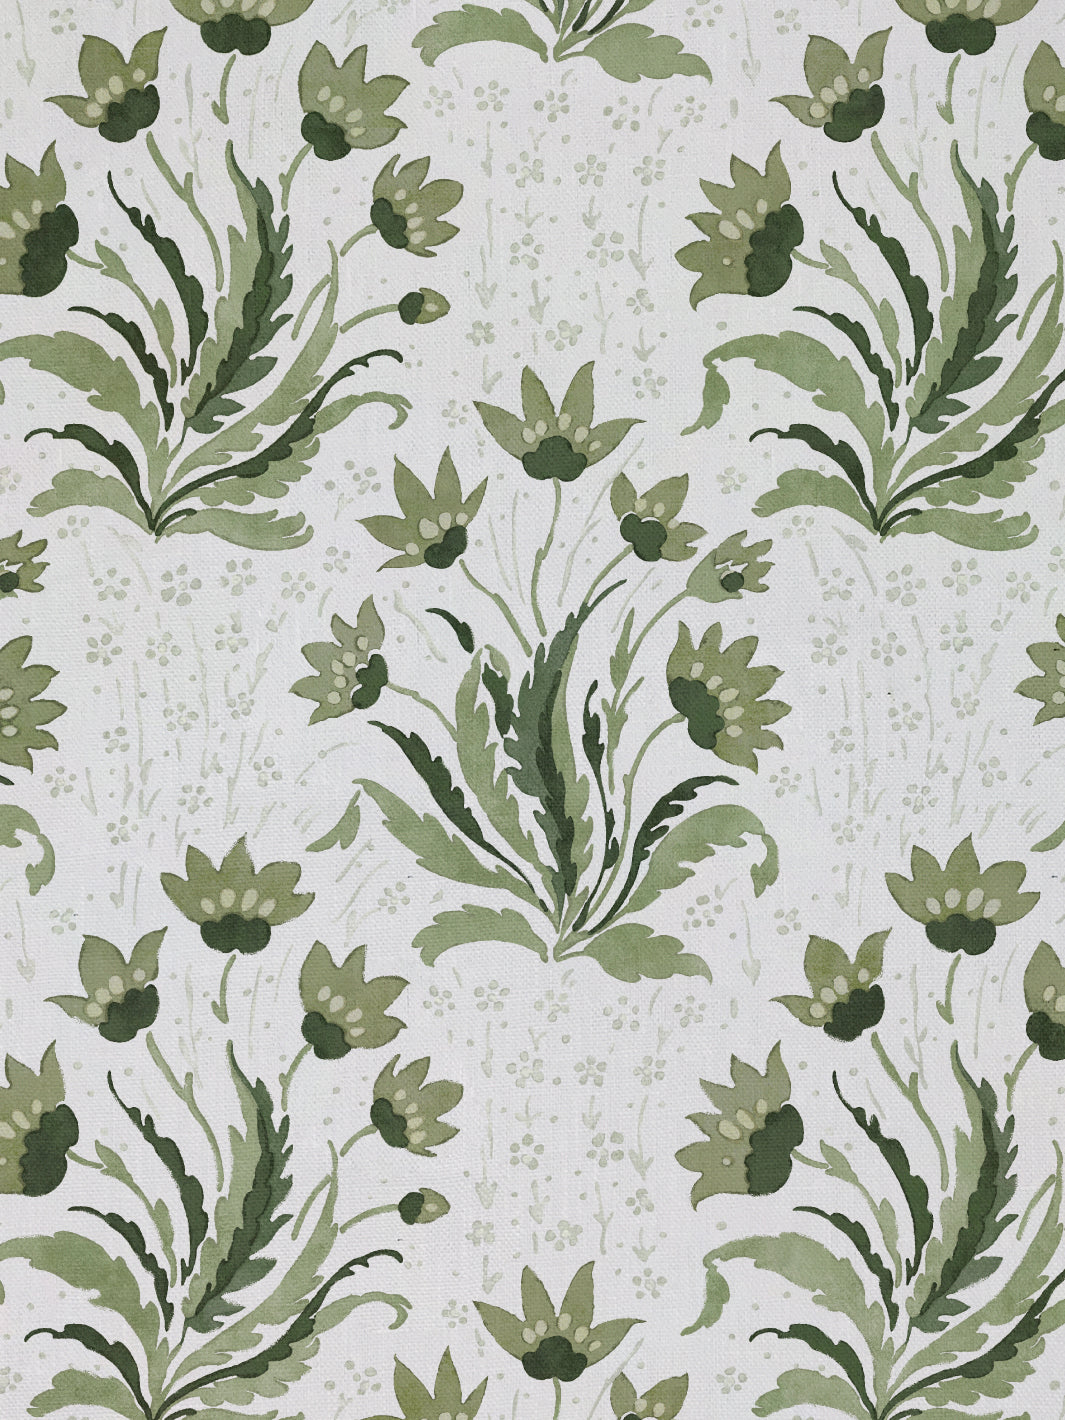 &#39;Hillhouse Floral Tonal&#39; Linen Fabric - Moss